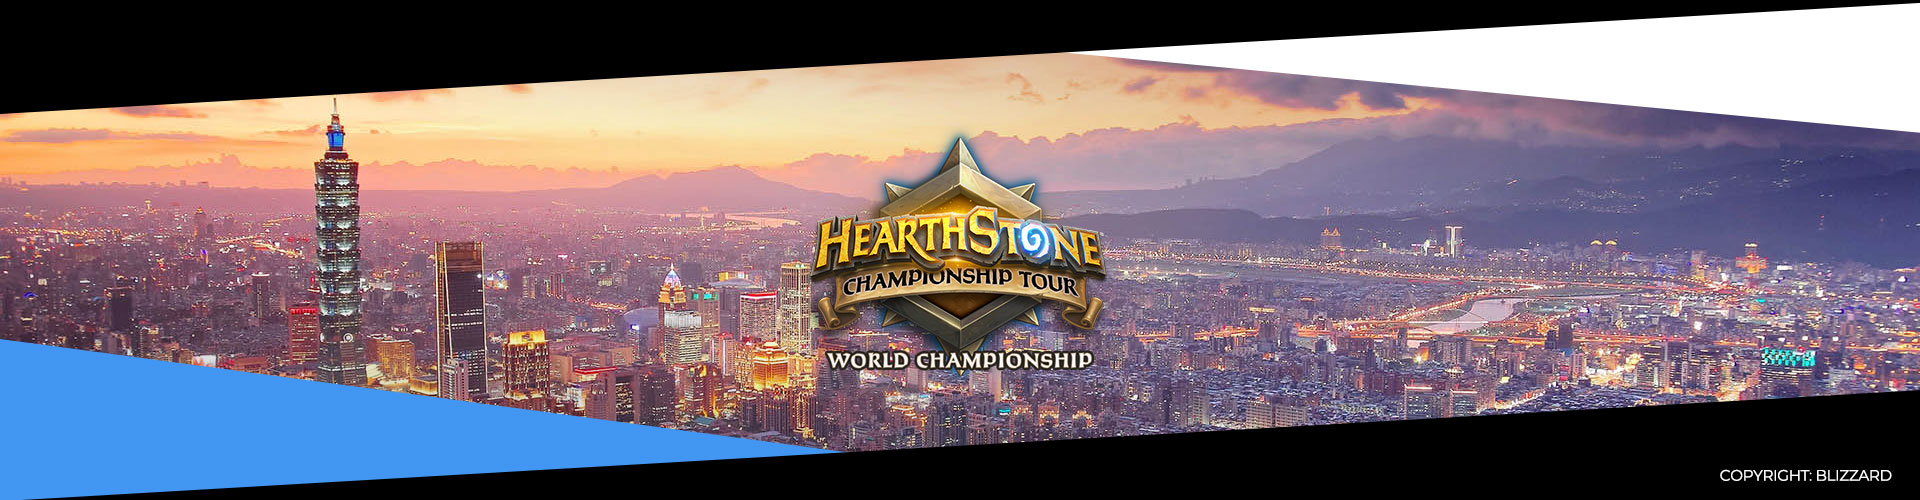 Hearthstone maailmanmestaruuskilpailut 2019